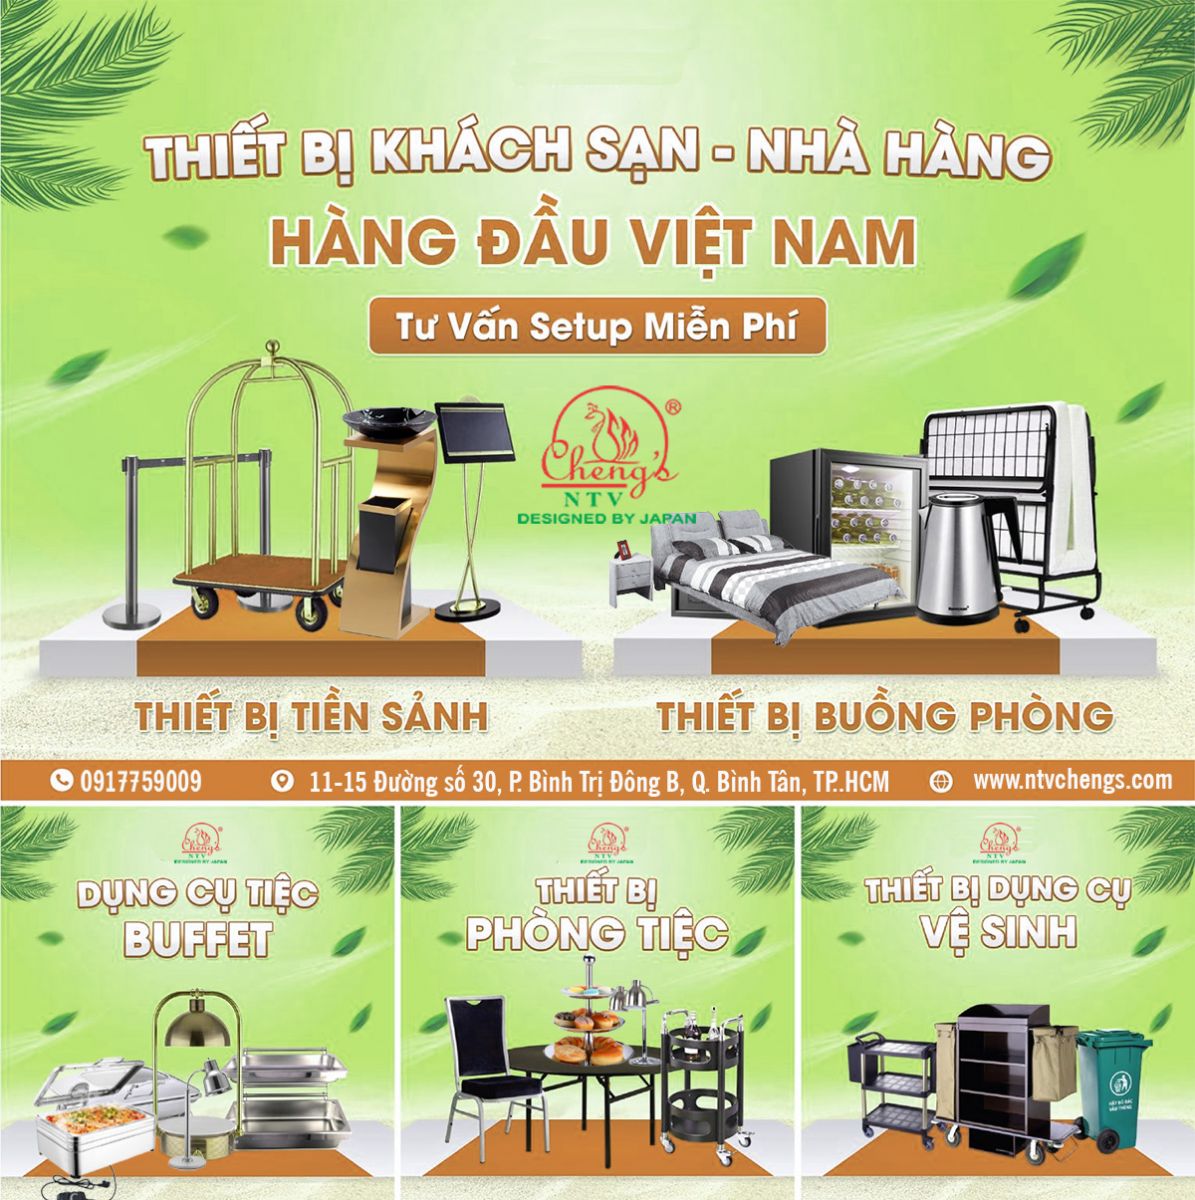 Giải pháp cung cấp thiết bị nhà hàng khách sạn hàng đầu tại Việt Nam